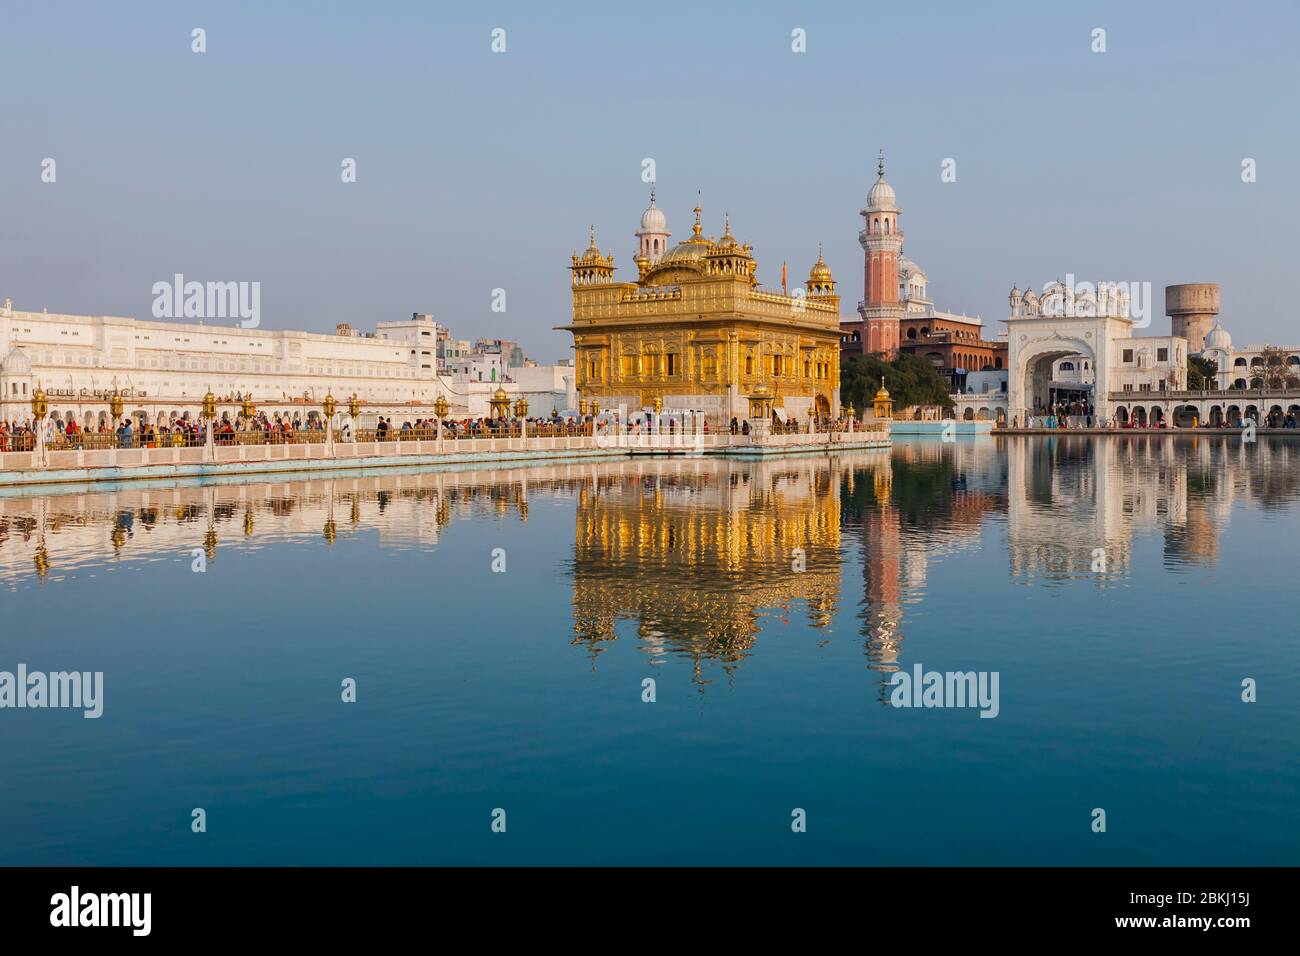 Indien, Punjab Staat, Amritsar, Harmandir Sahib, Goldener Tempel unter der Sonne, mit Reflexion im Nektar Becken, Amrit Sarovar, heiliger Ort des Sikhismus Stockfoto